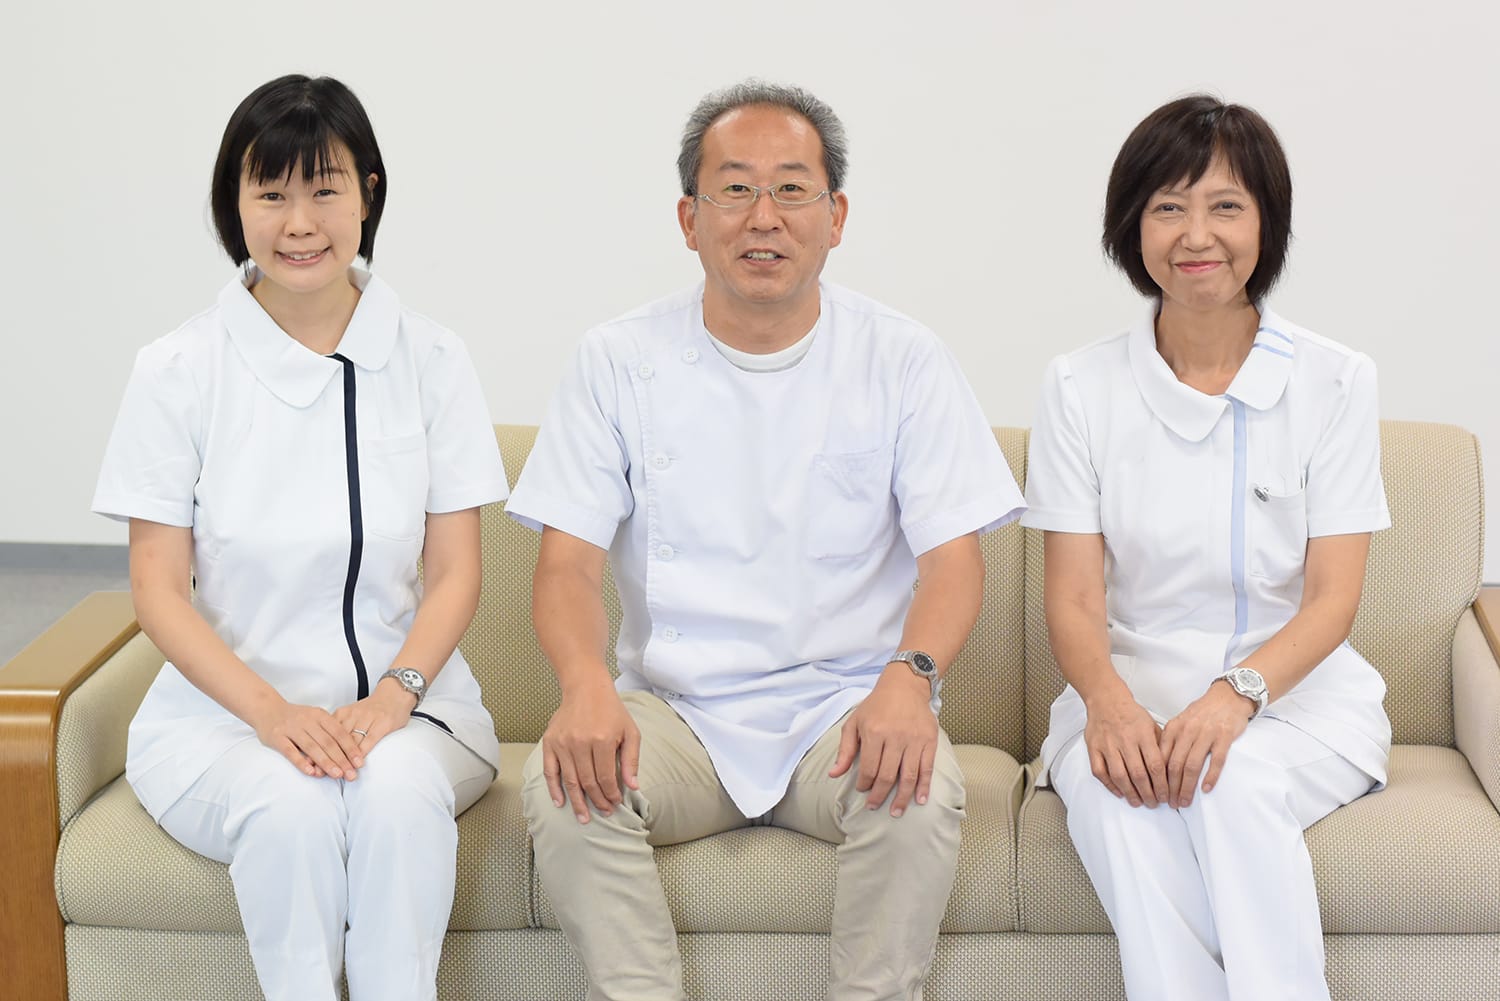 千葉県初の糖尿病センター、その中での看護師の役割